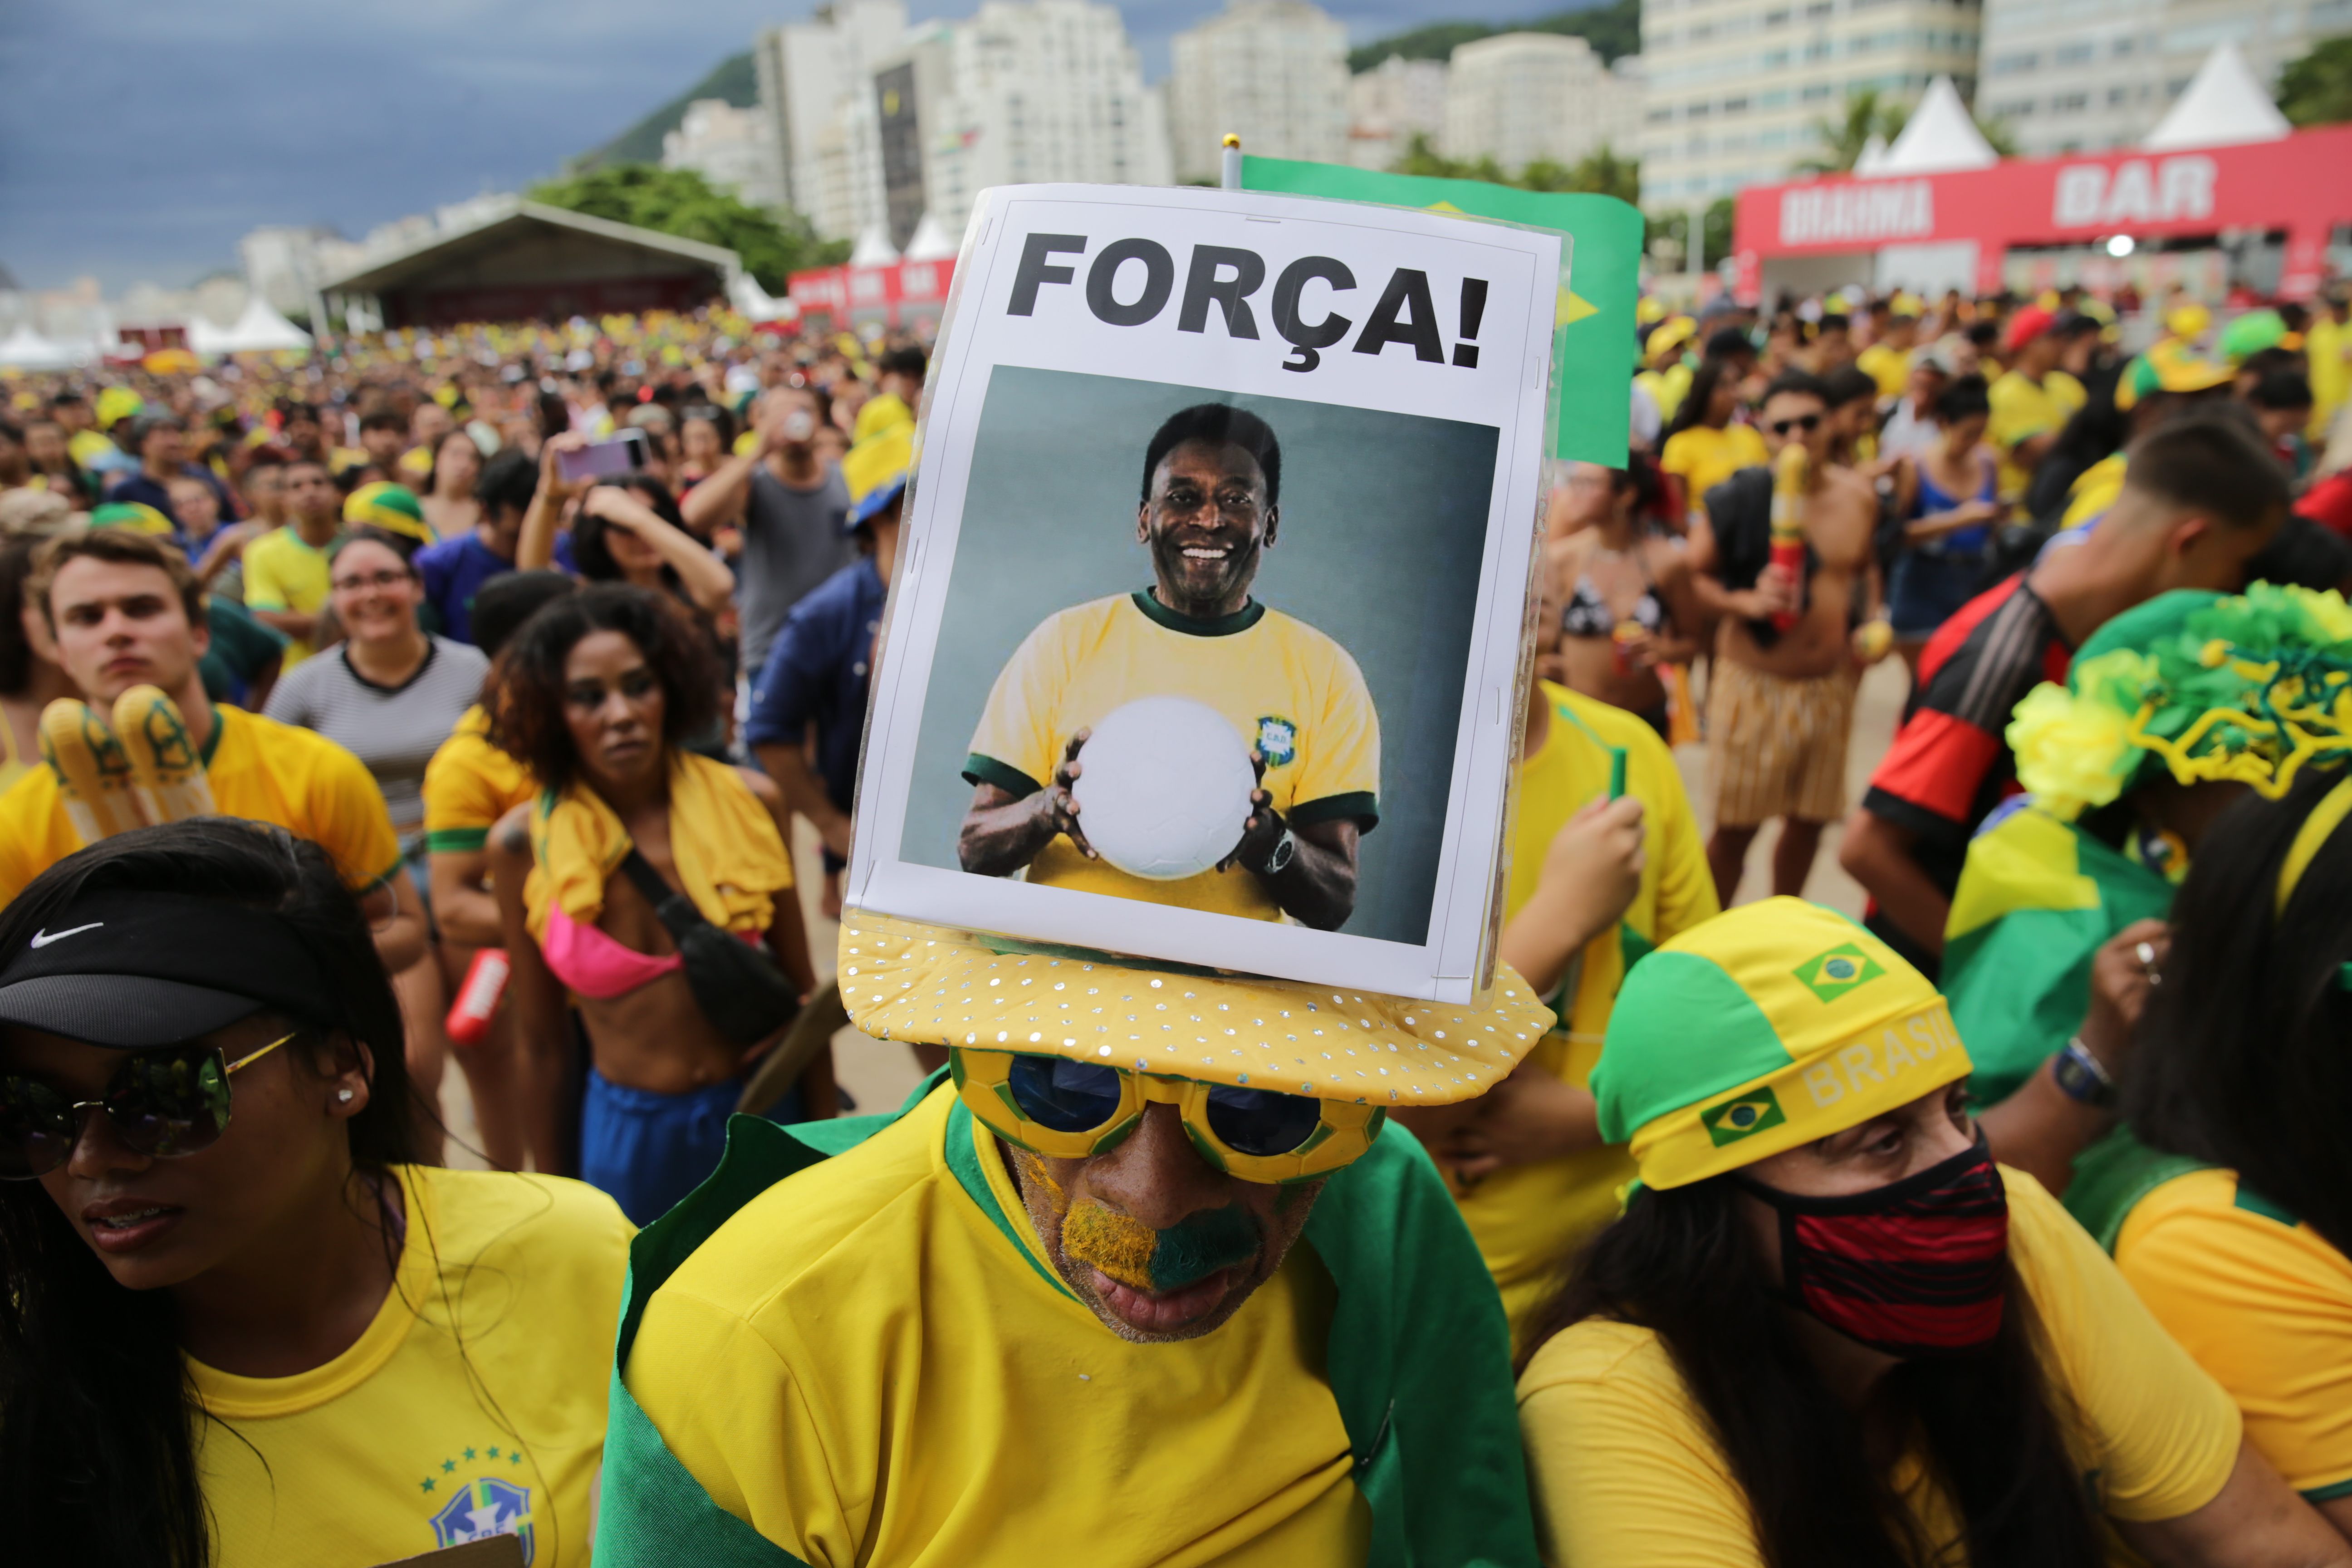 ĐT Brazil vinh danh Pele trong trận thắng đậm trước Hàn Quốc